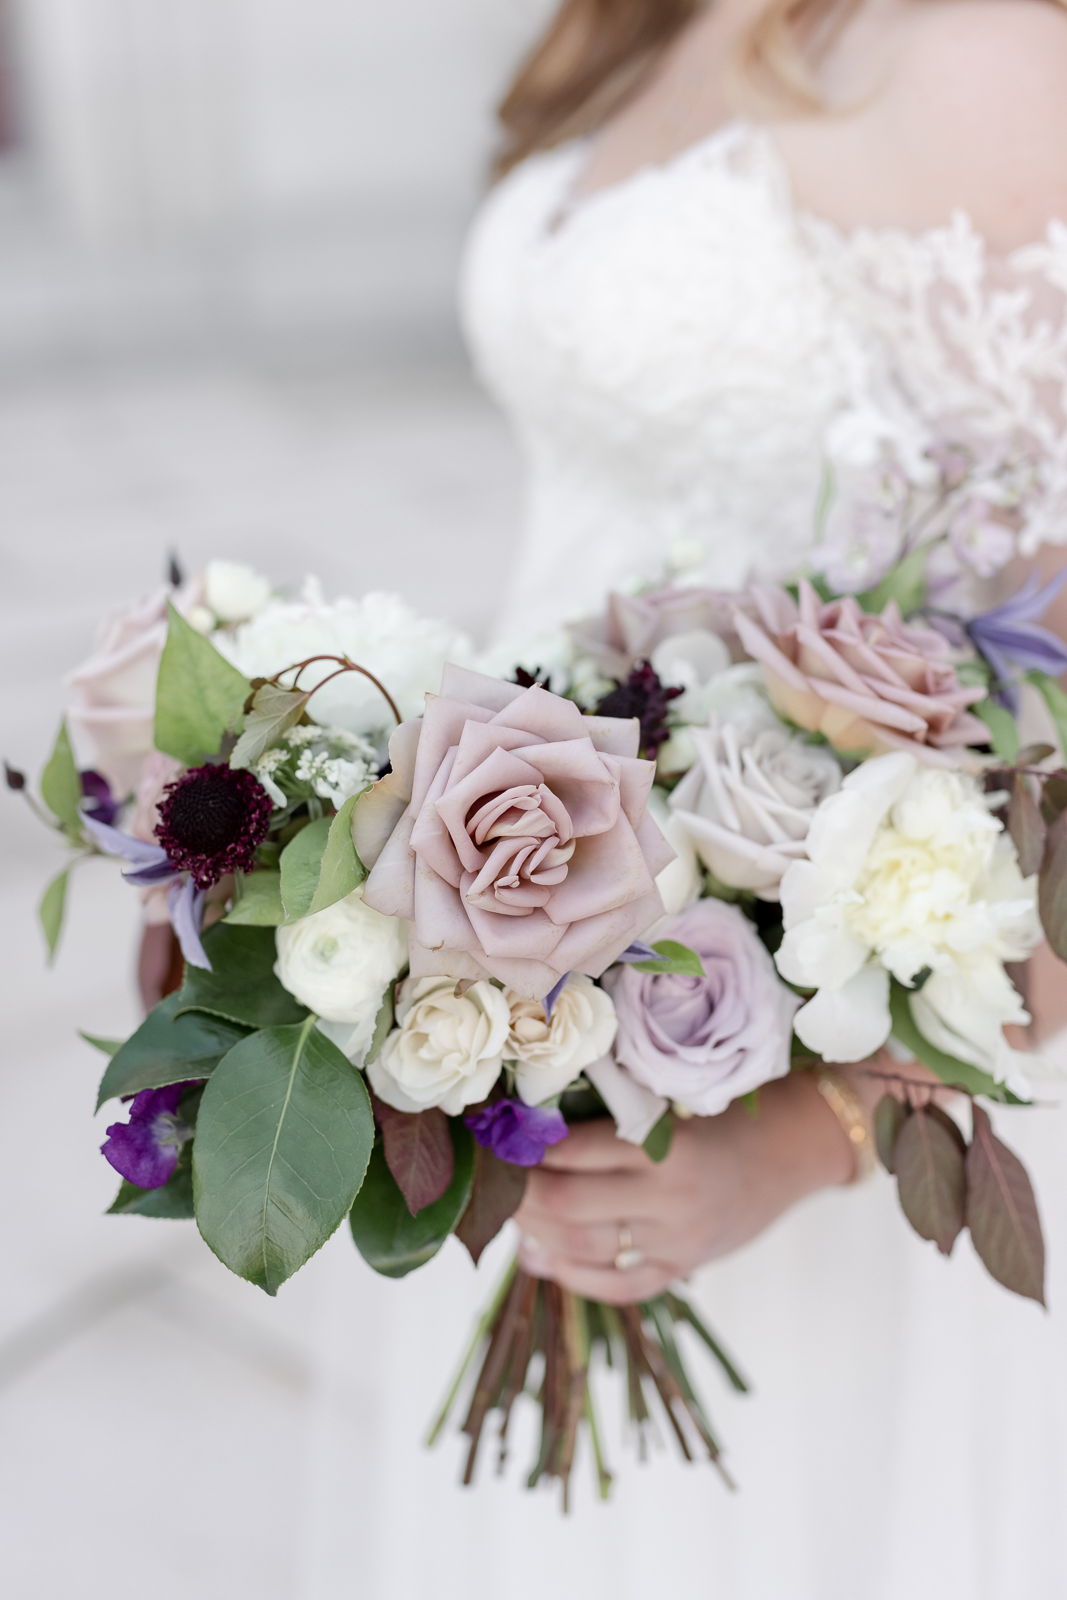 Soft Romantic Bridal Bouquet